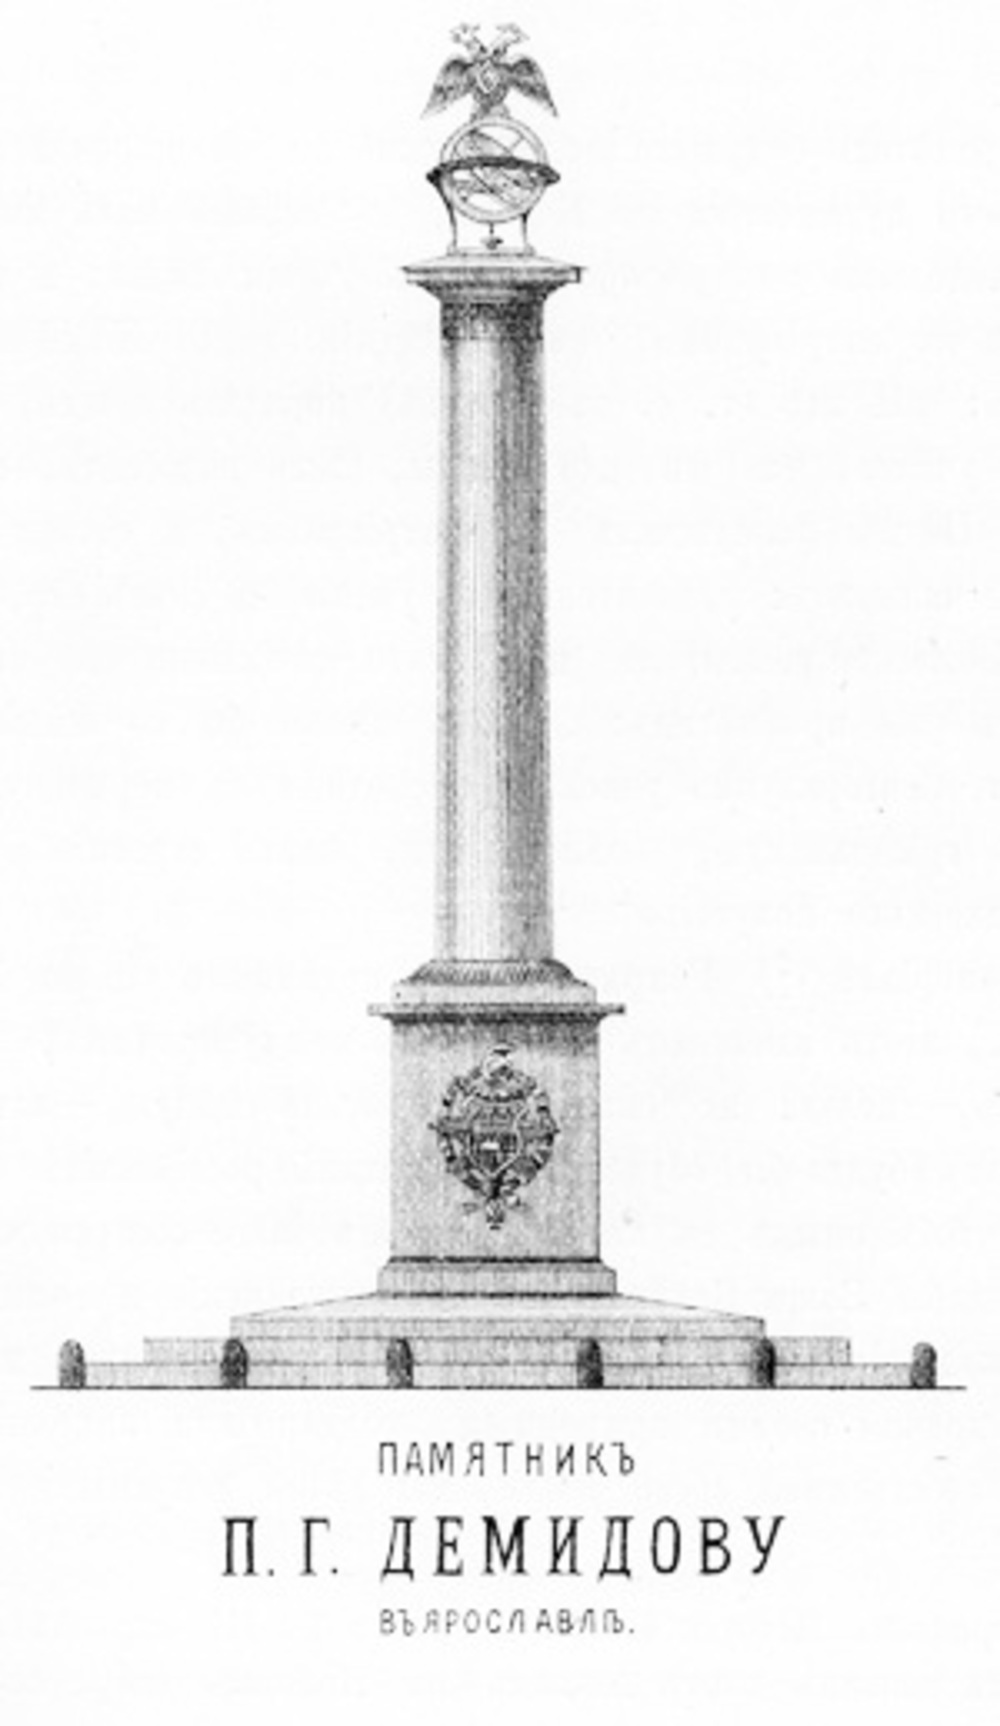 Демидов памятник Ярославль